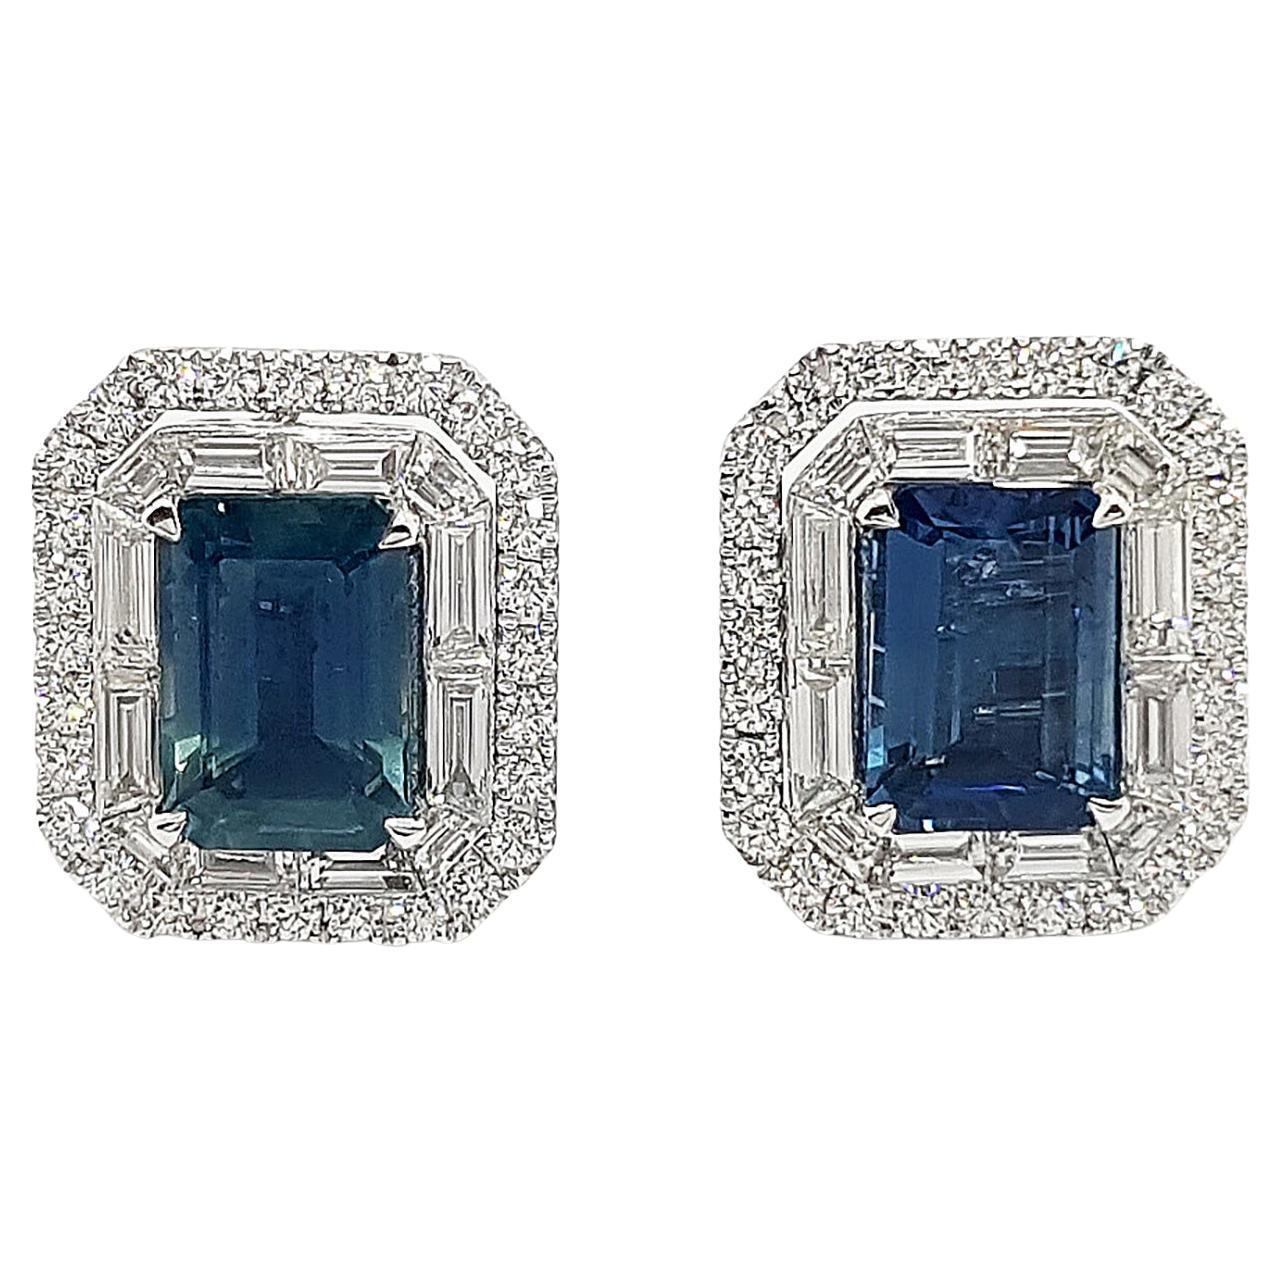 Blauer Saphir und Diamant-Ohrringe in 18 Karat Weißgold gefasst